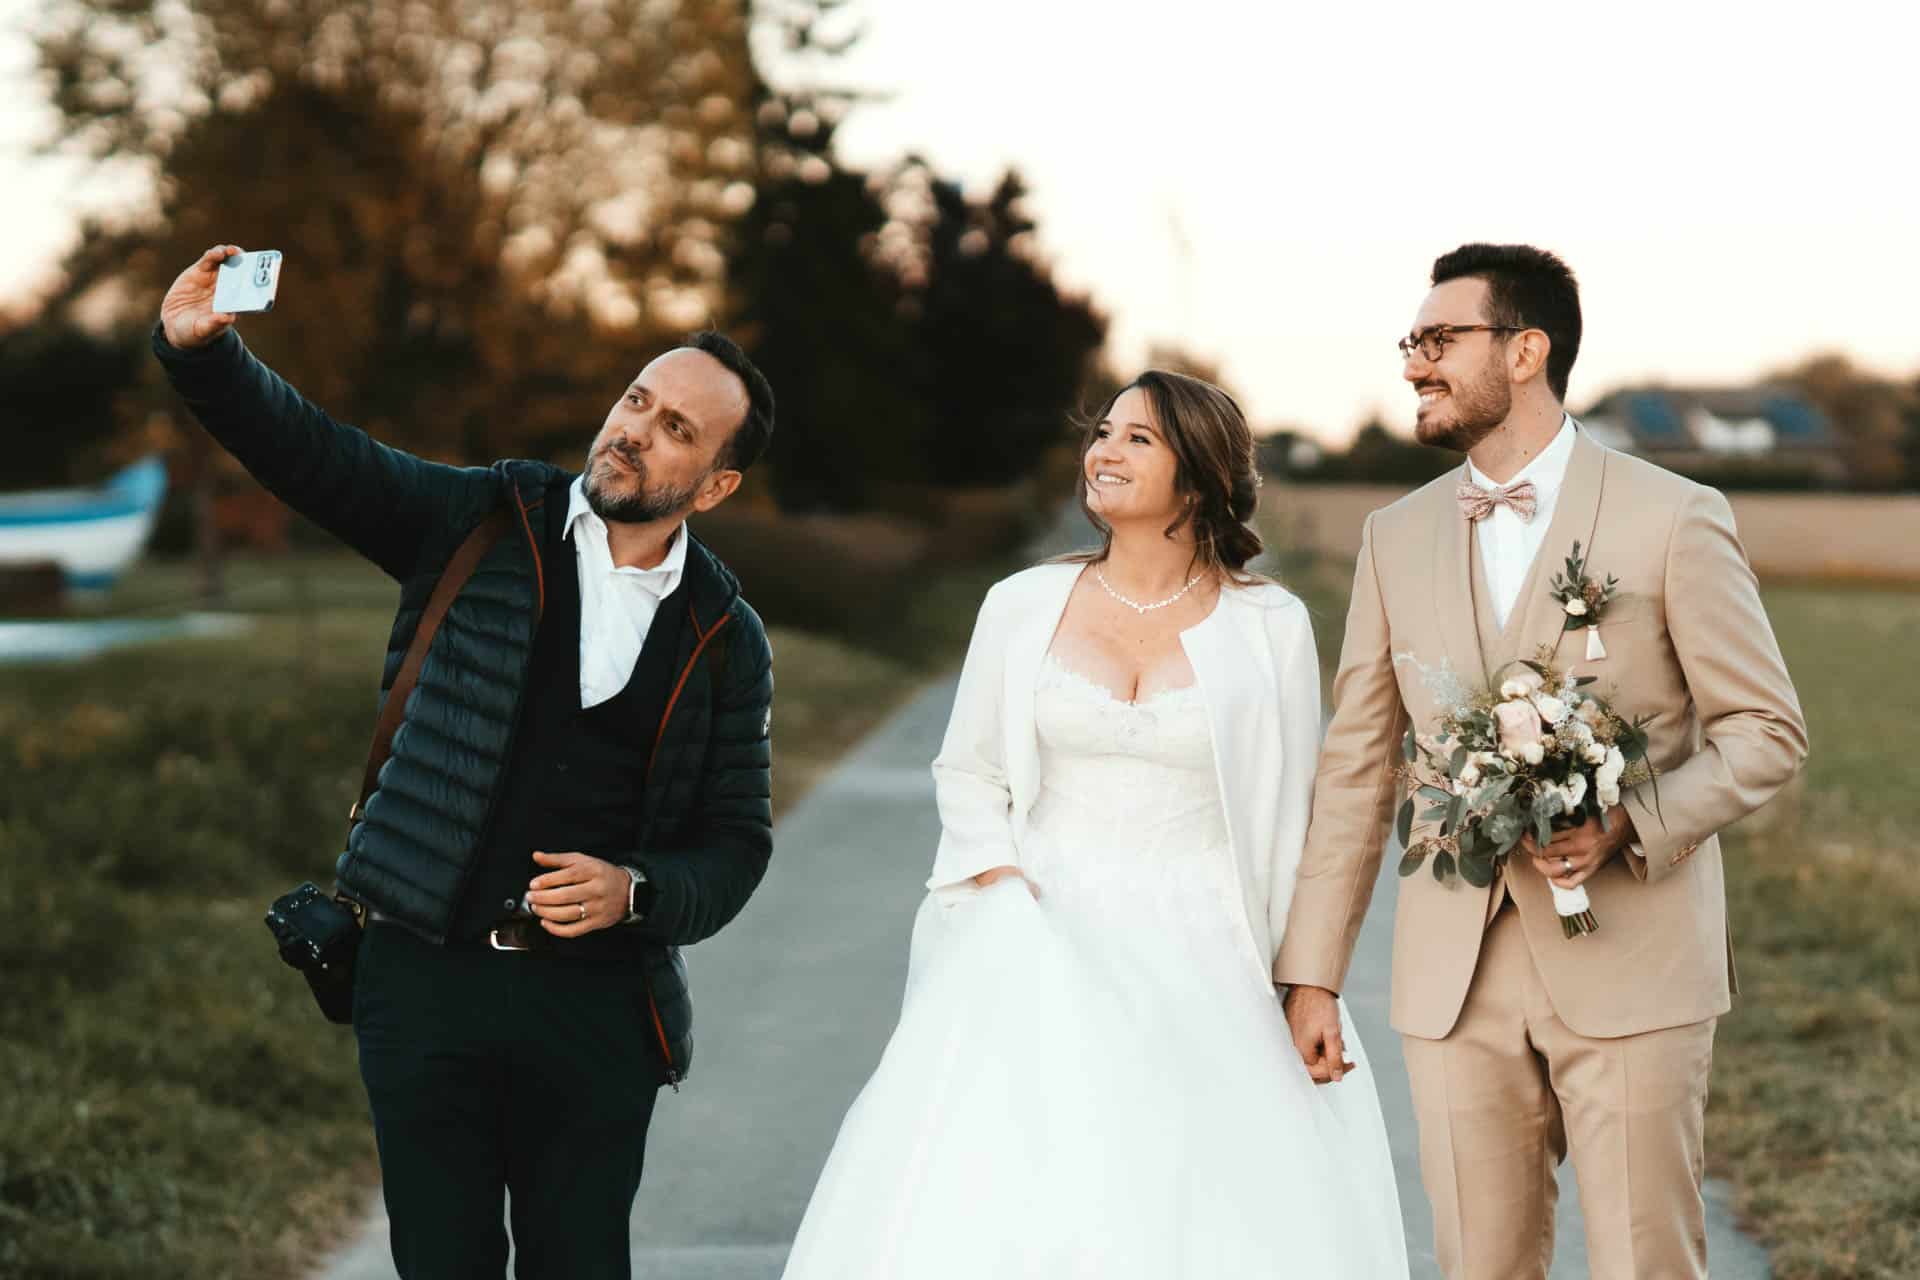 RDMPHOTOS - Photographe professionnel a Geneve pose avec les mariés